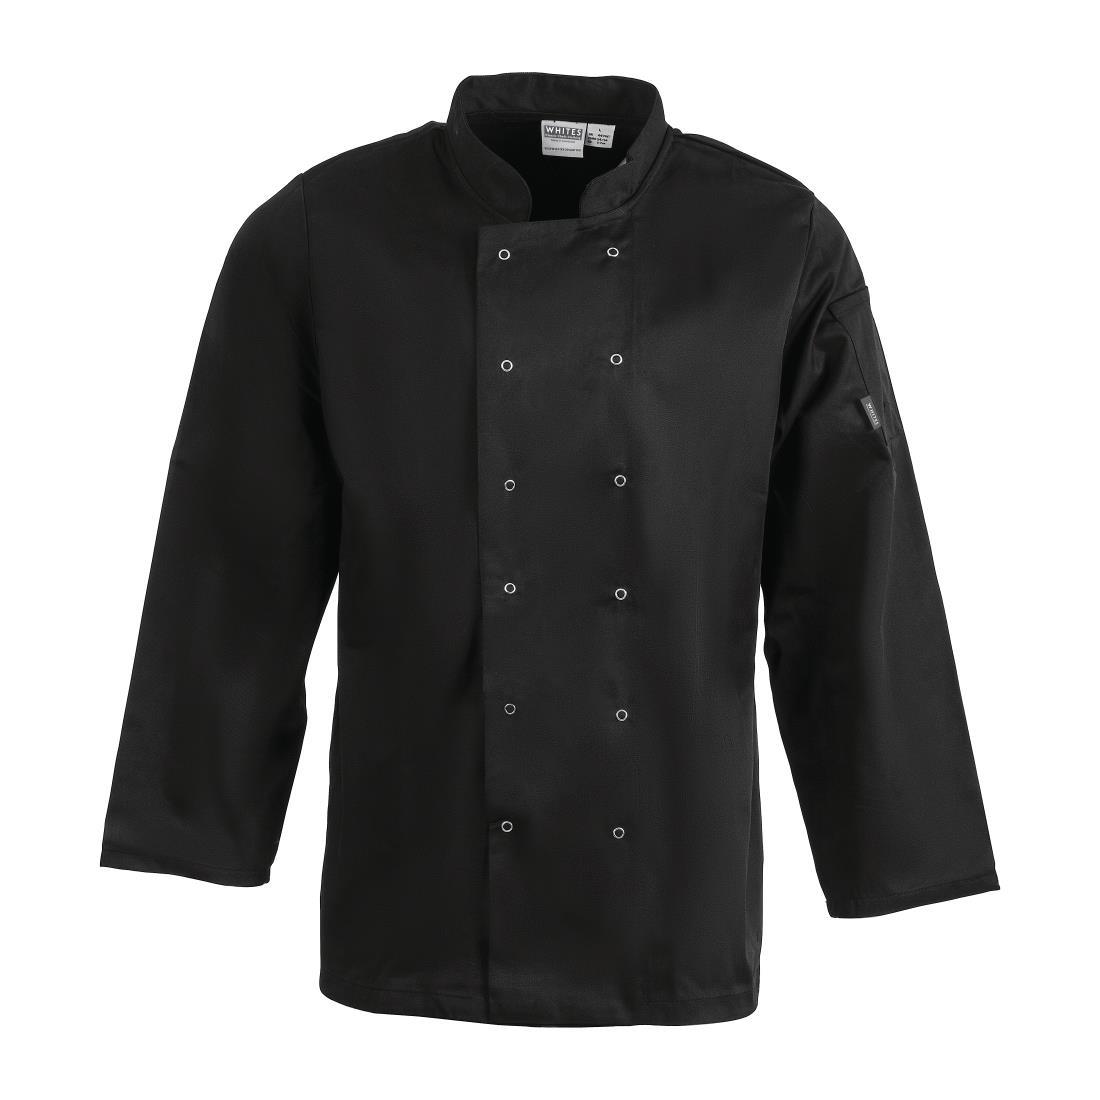 Whites Vegas Unisex Chefs Jacket Long Sleeve Black XL - A438-XL  - 1